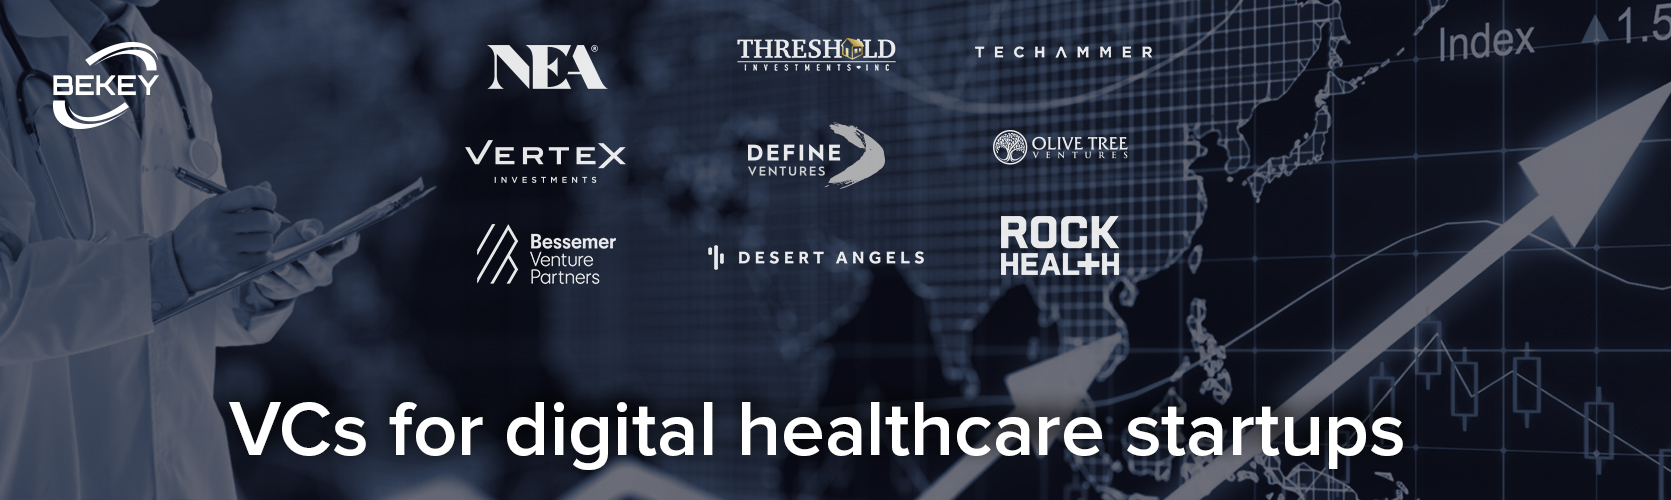 Top investors in digital health